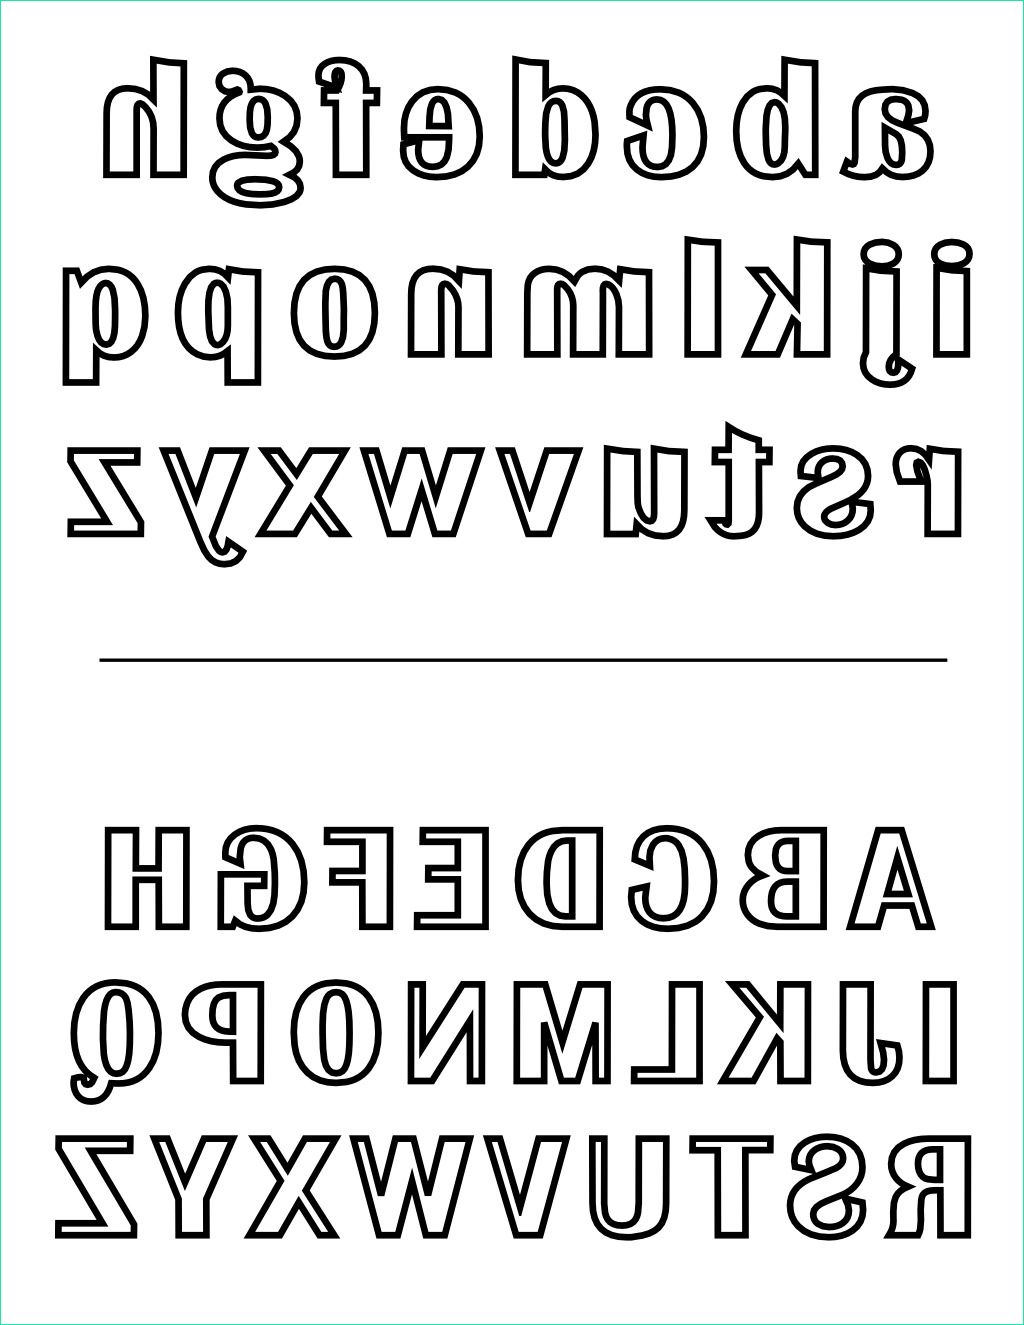 alphabets majuscule et minuscule a colorier source data destine alphabet majuscule et minuscule